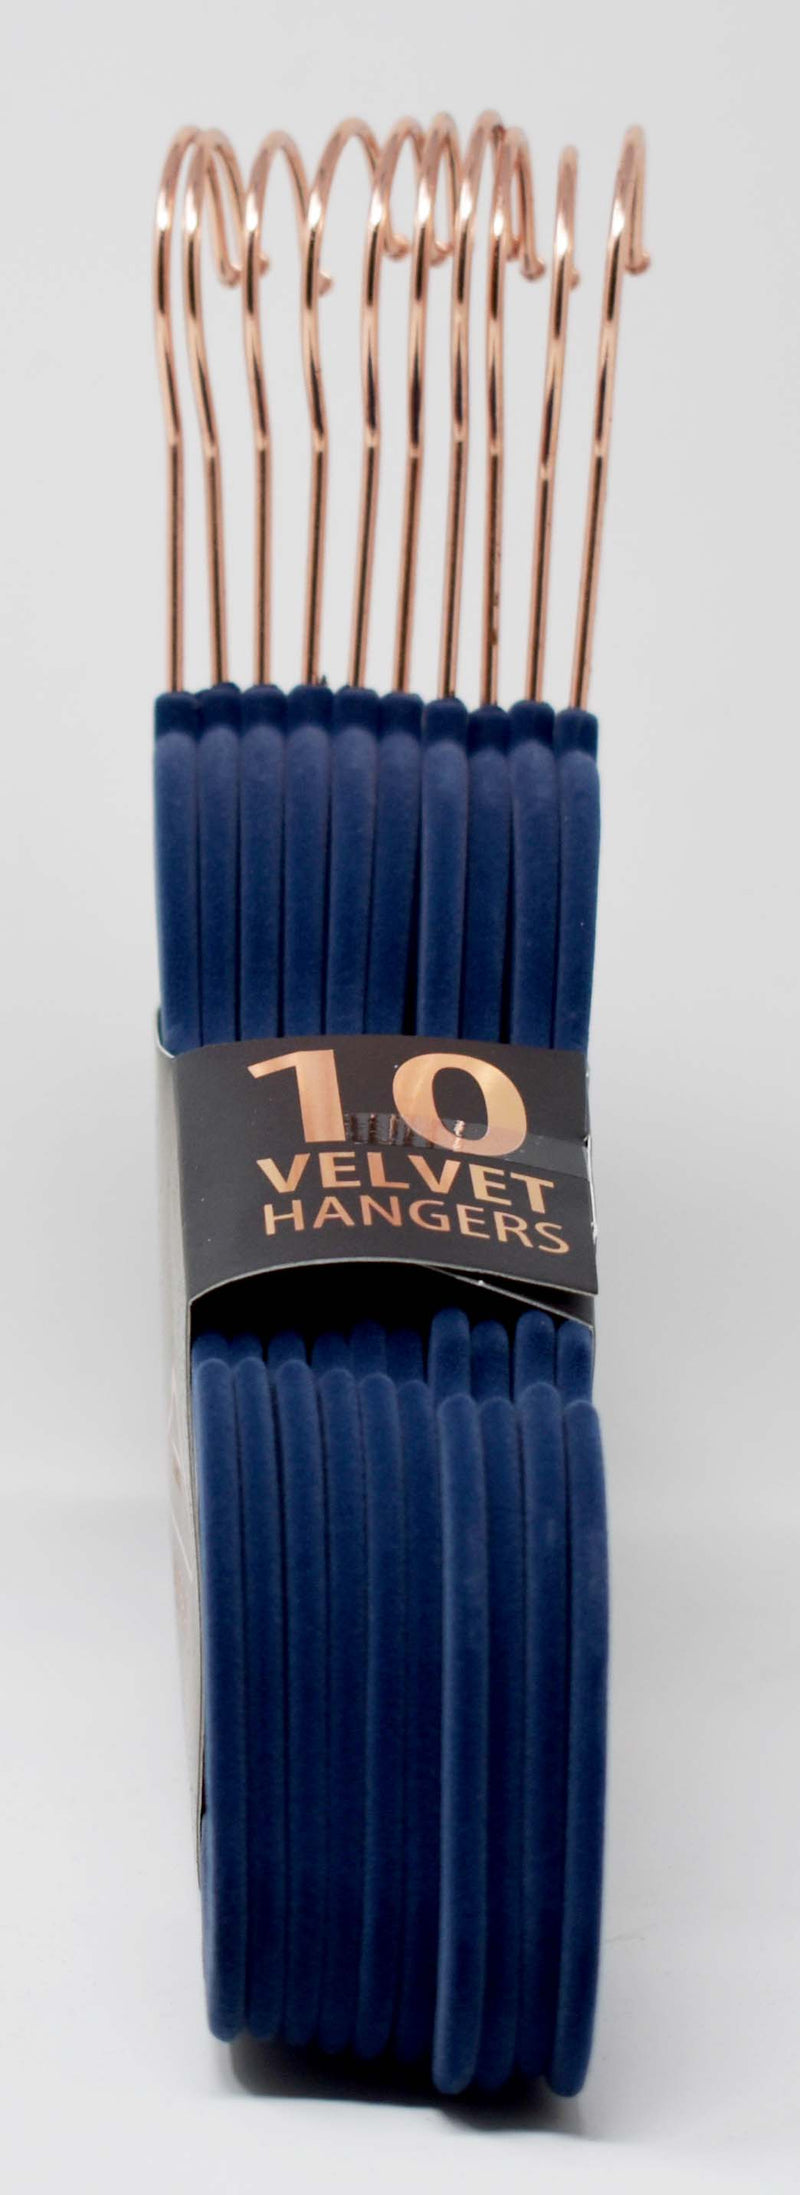 Velvet Hangers, 10-ct